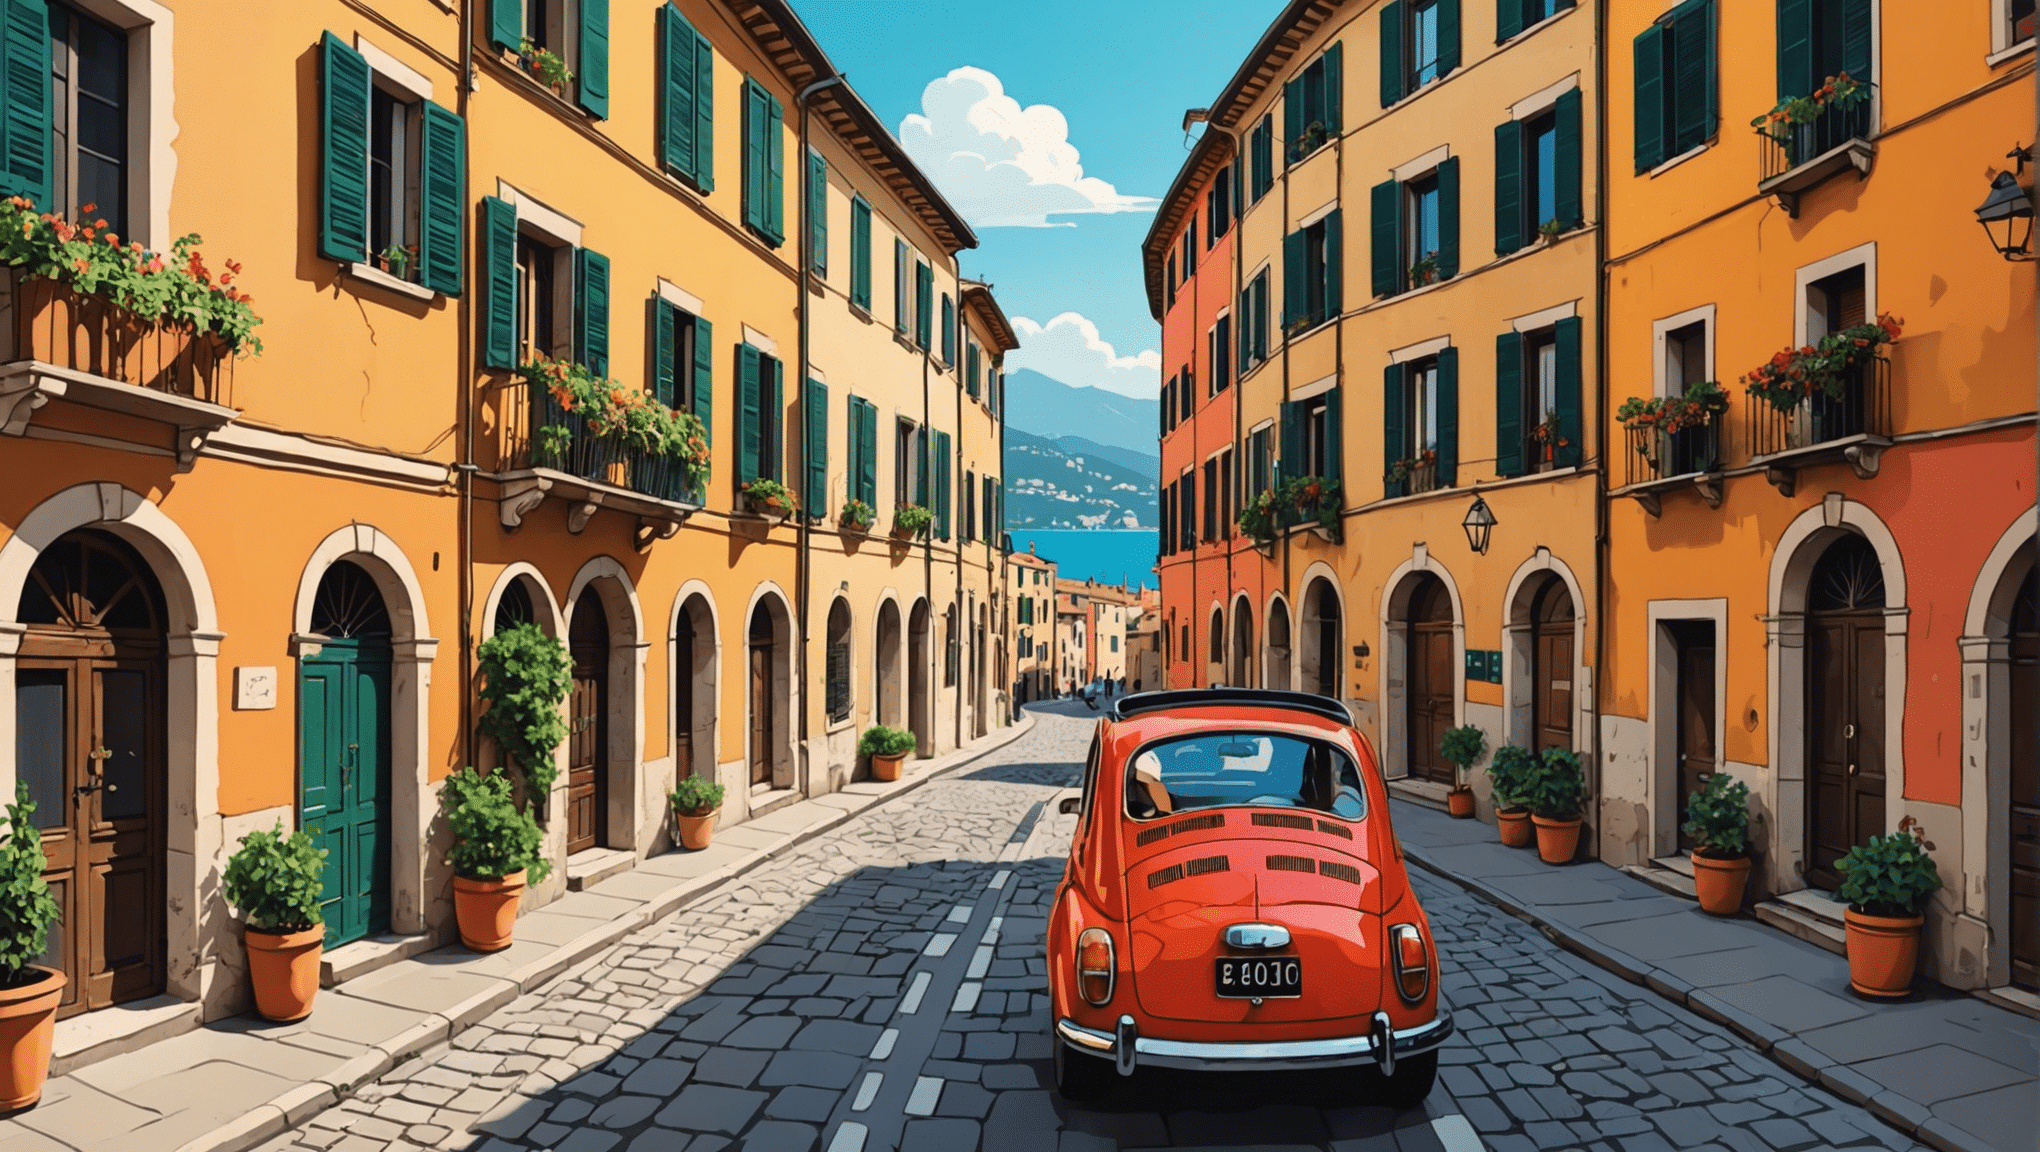 découvrez les sites incontournables à visiter lors d'un voyage en italie et vivez une expérience unique au cœur de ce pays fascinant.